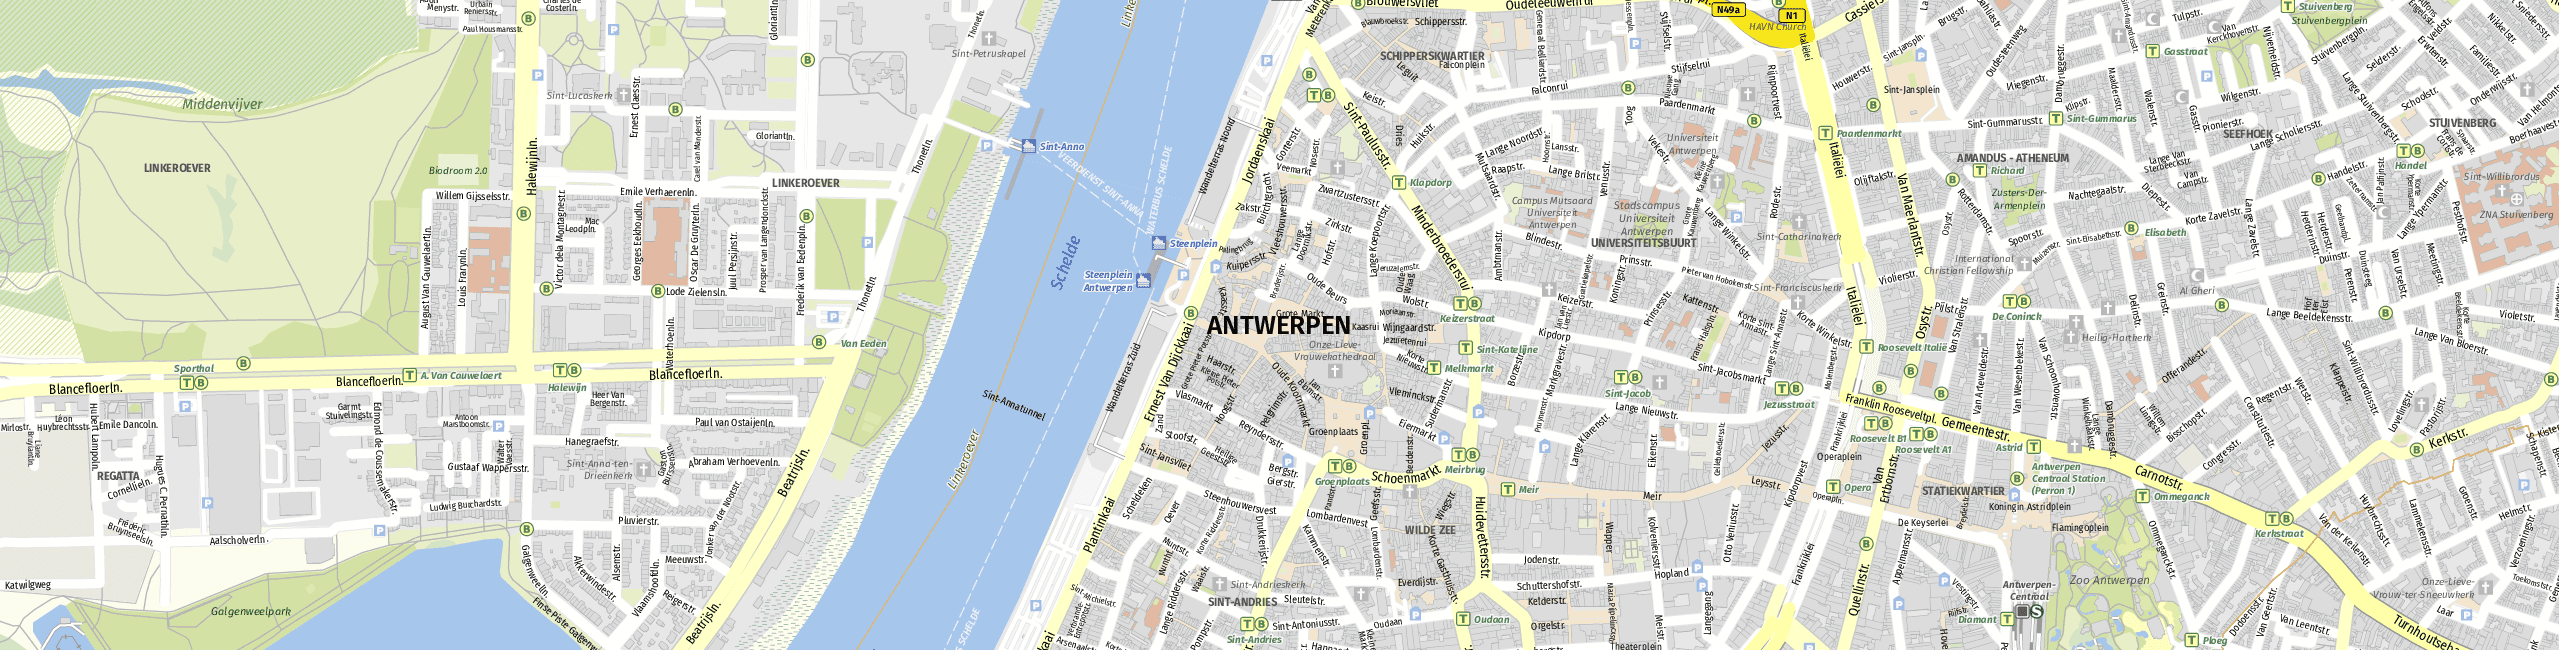 Stadtplan Anvers zum Downloaden.